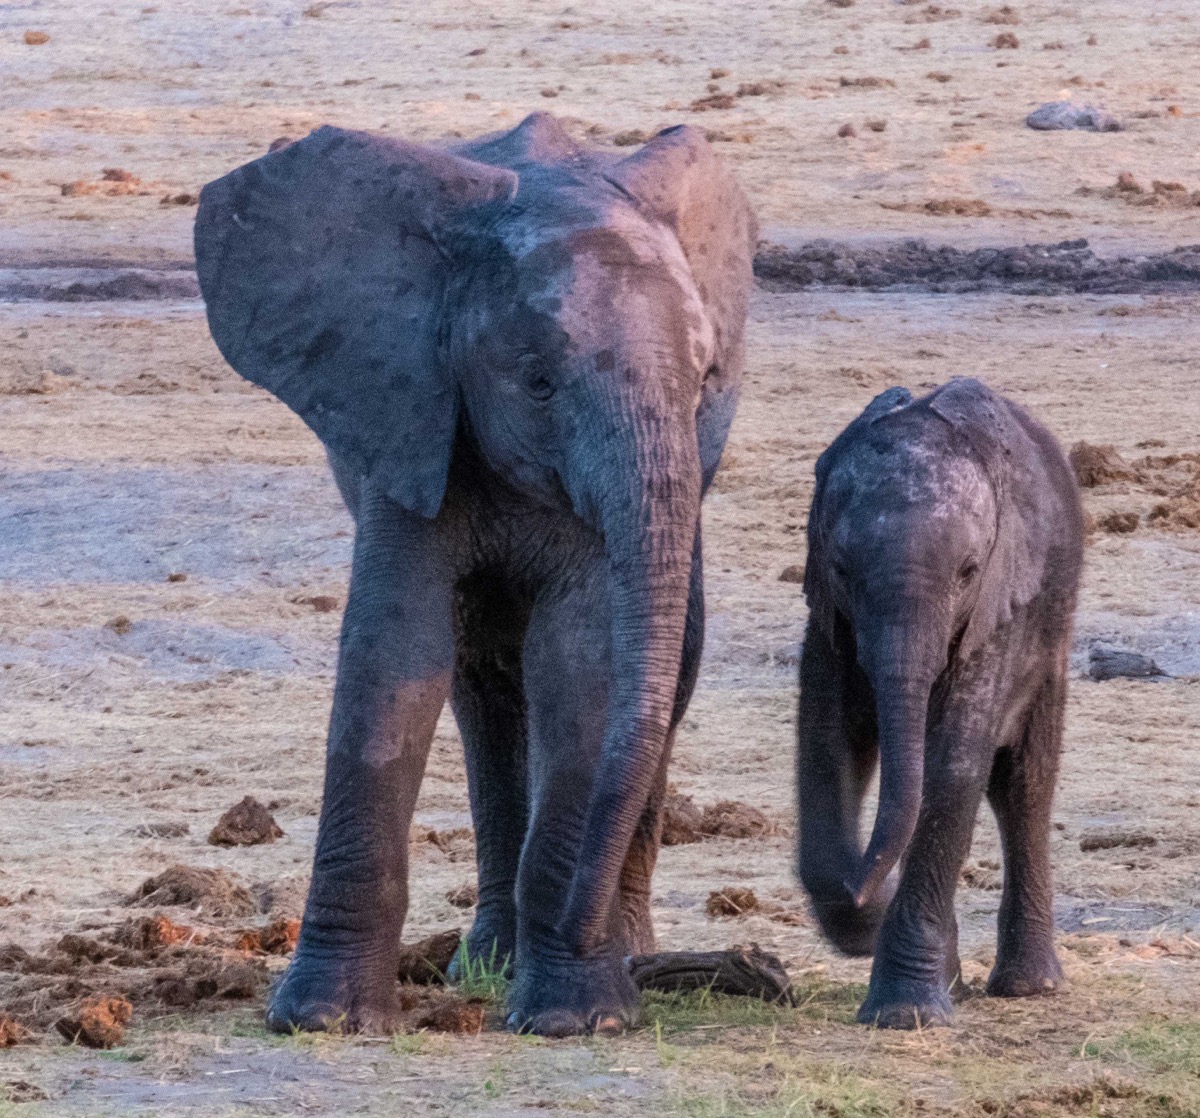 2 young elephants